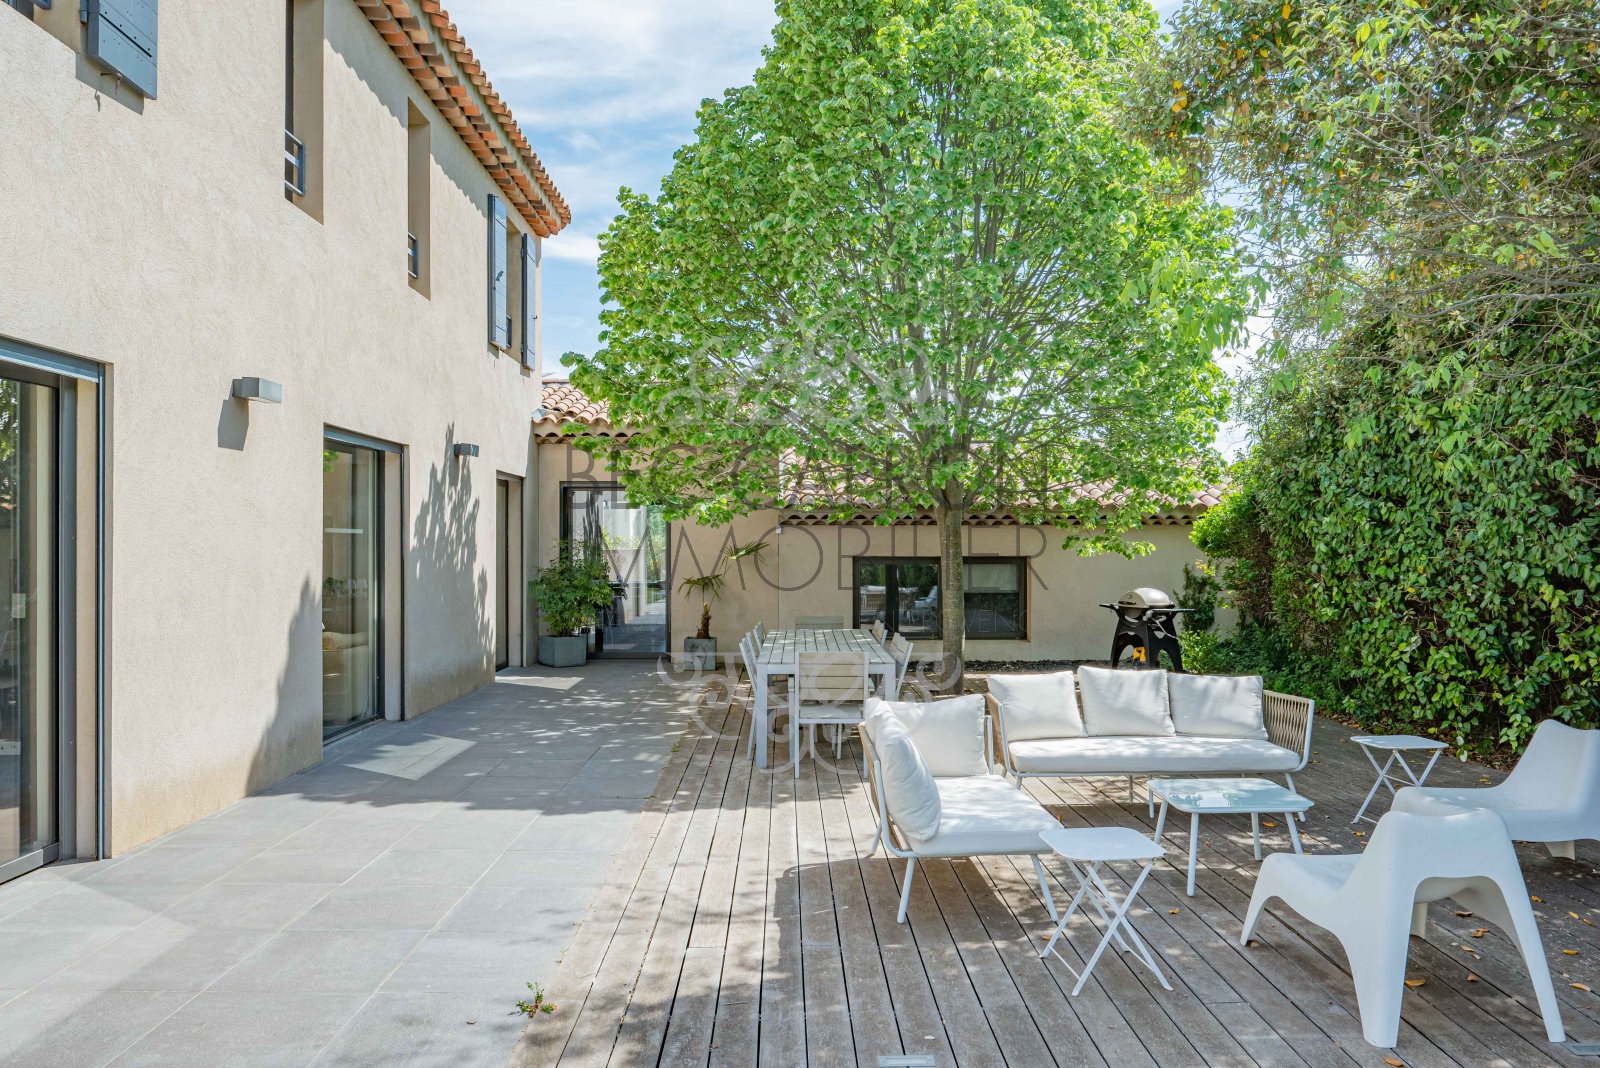 Image_14, Maisons (maison, propriÃ©tÃ©, villa, Mas,bastide, maison de village), Aix-en-Provence, ref :1145VM